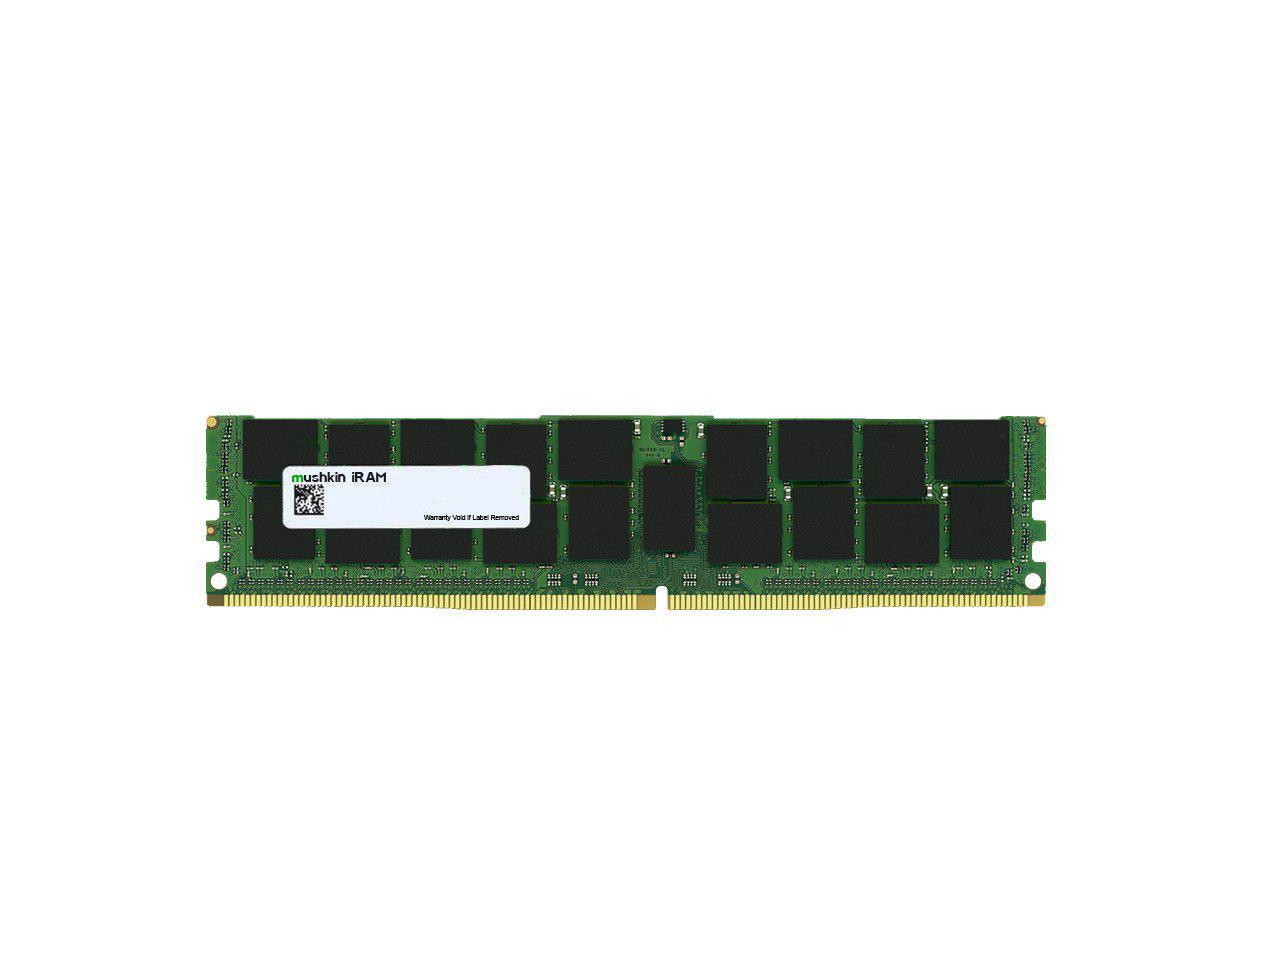 Mushkin 8GB DDR4 RDIMM PC4-2933 Model MAR4R293MF8G18